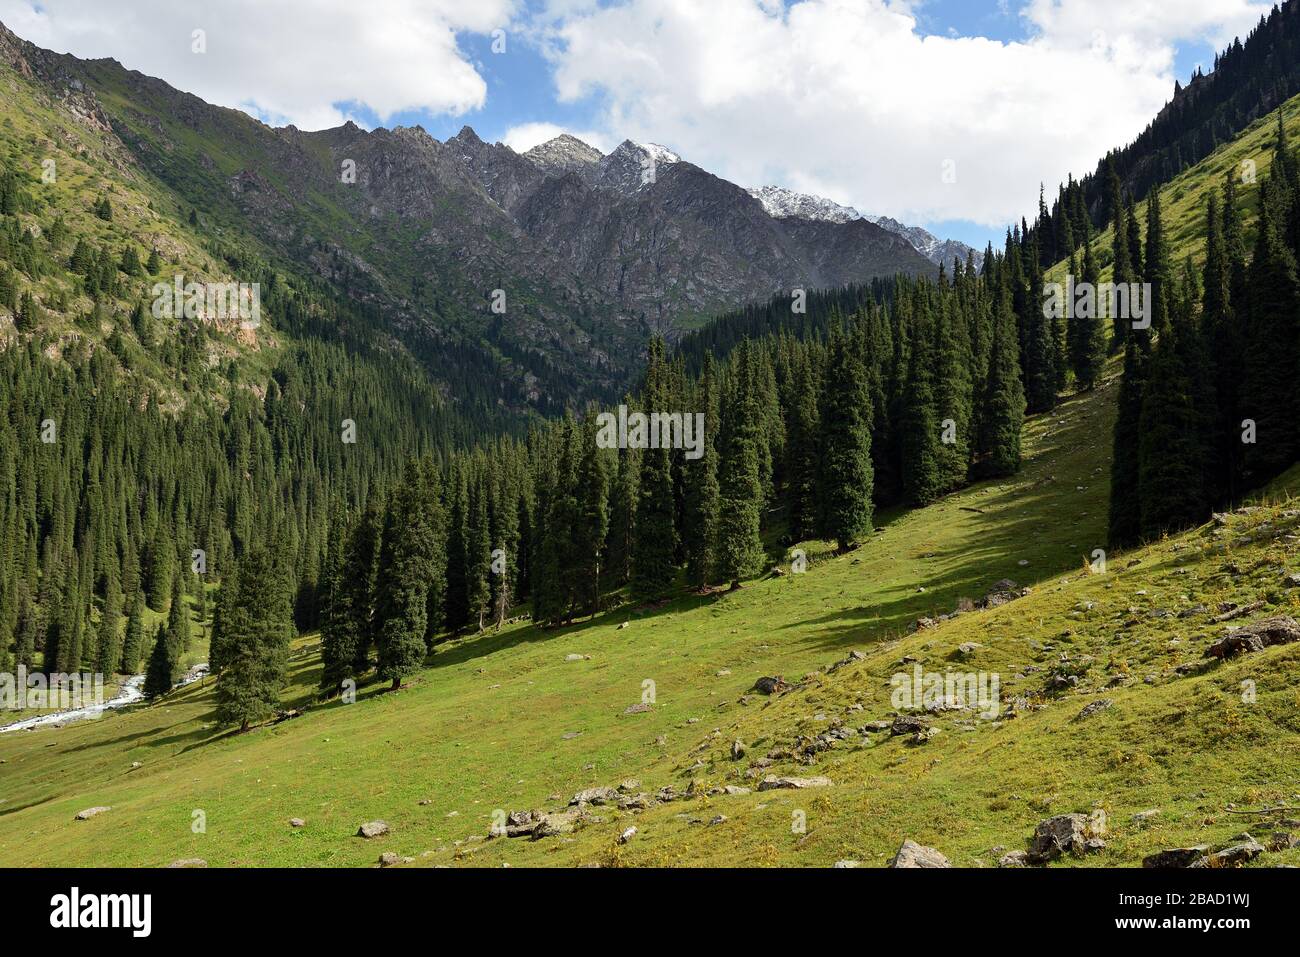 Landschaft der Ala Kul Lake Trail am Terskey Alatau Gebirge in den Tian Shan Bergen. Kirgisistan, Zentralasien. Stockfoto